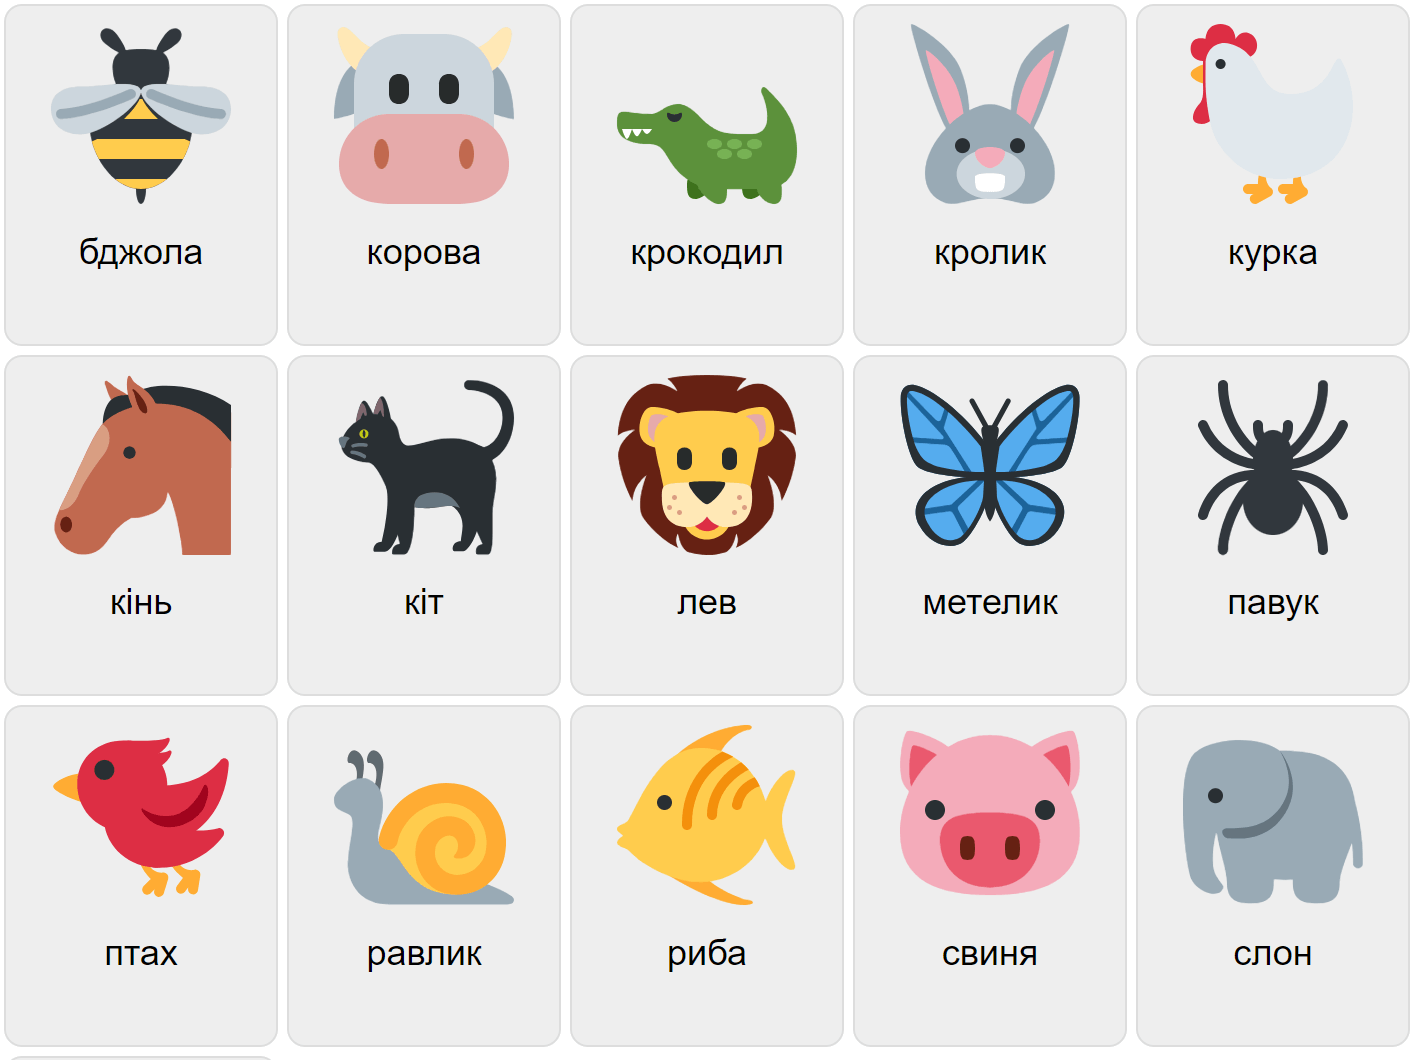 Animales en ucraniano 1